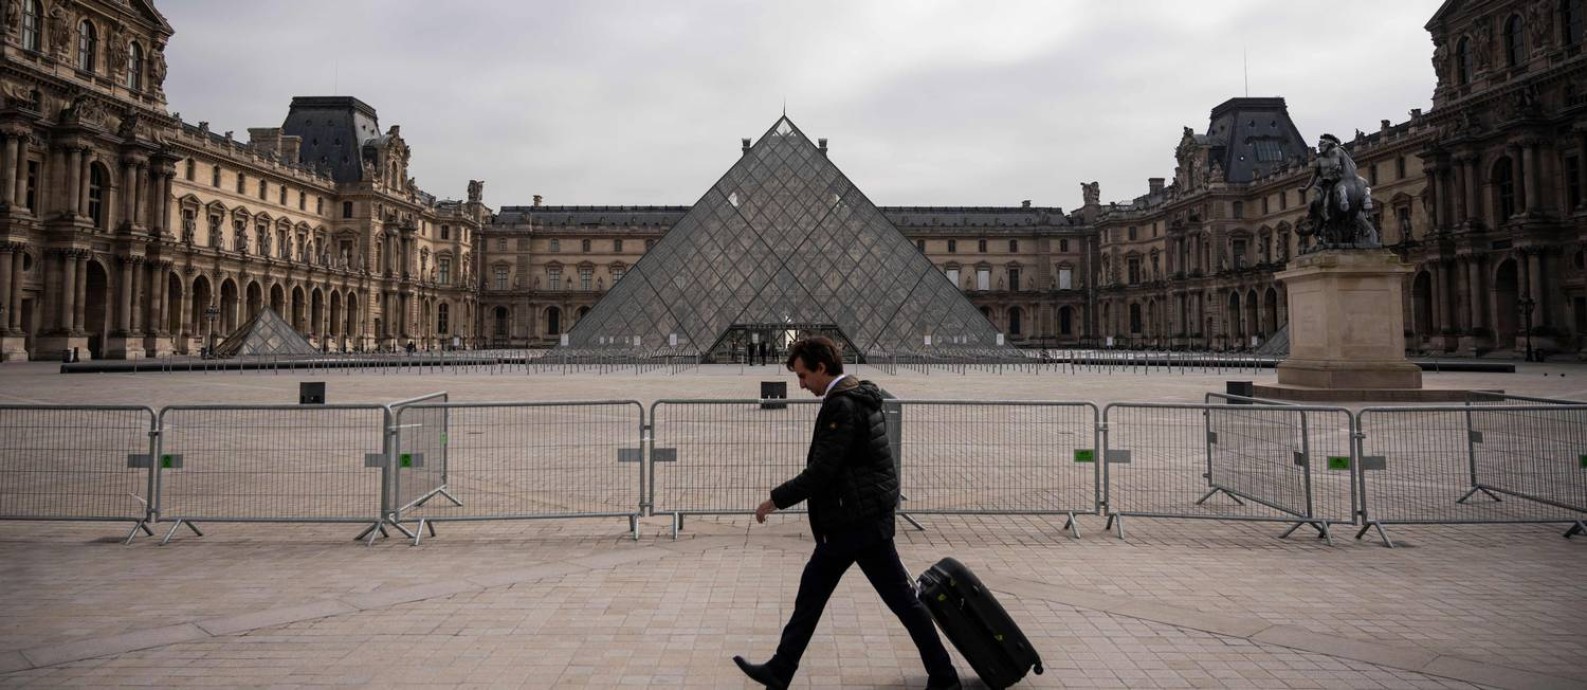 Homem caminha em frente ao Museu do Louvre, em Paris, fechado para visitação pela pandemia de Covid-19 Foto: LIONEL BONAVENTURE / AFP